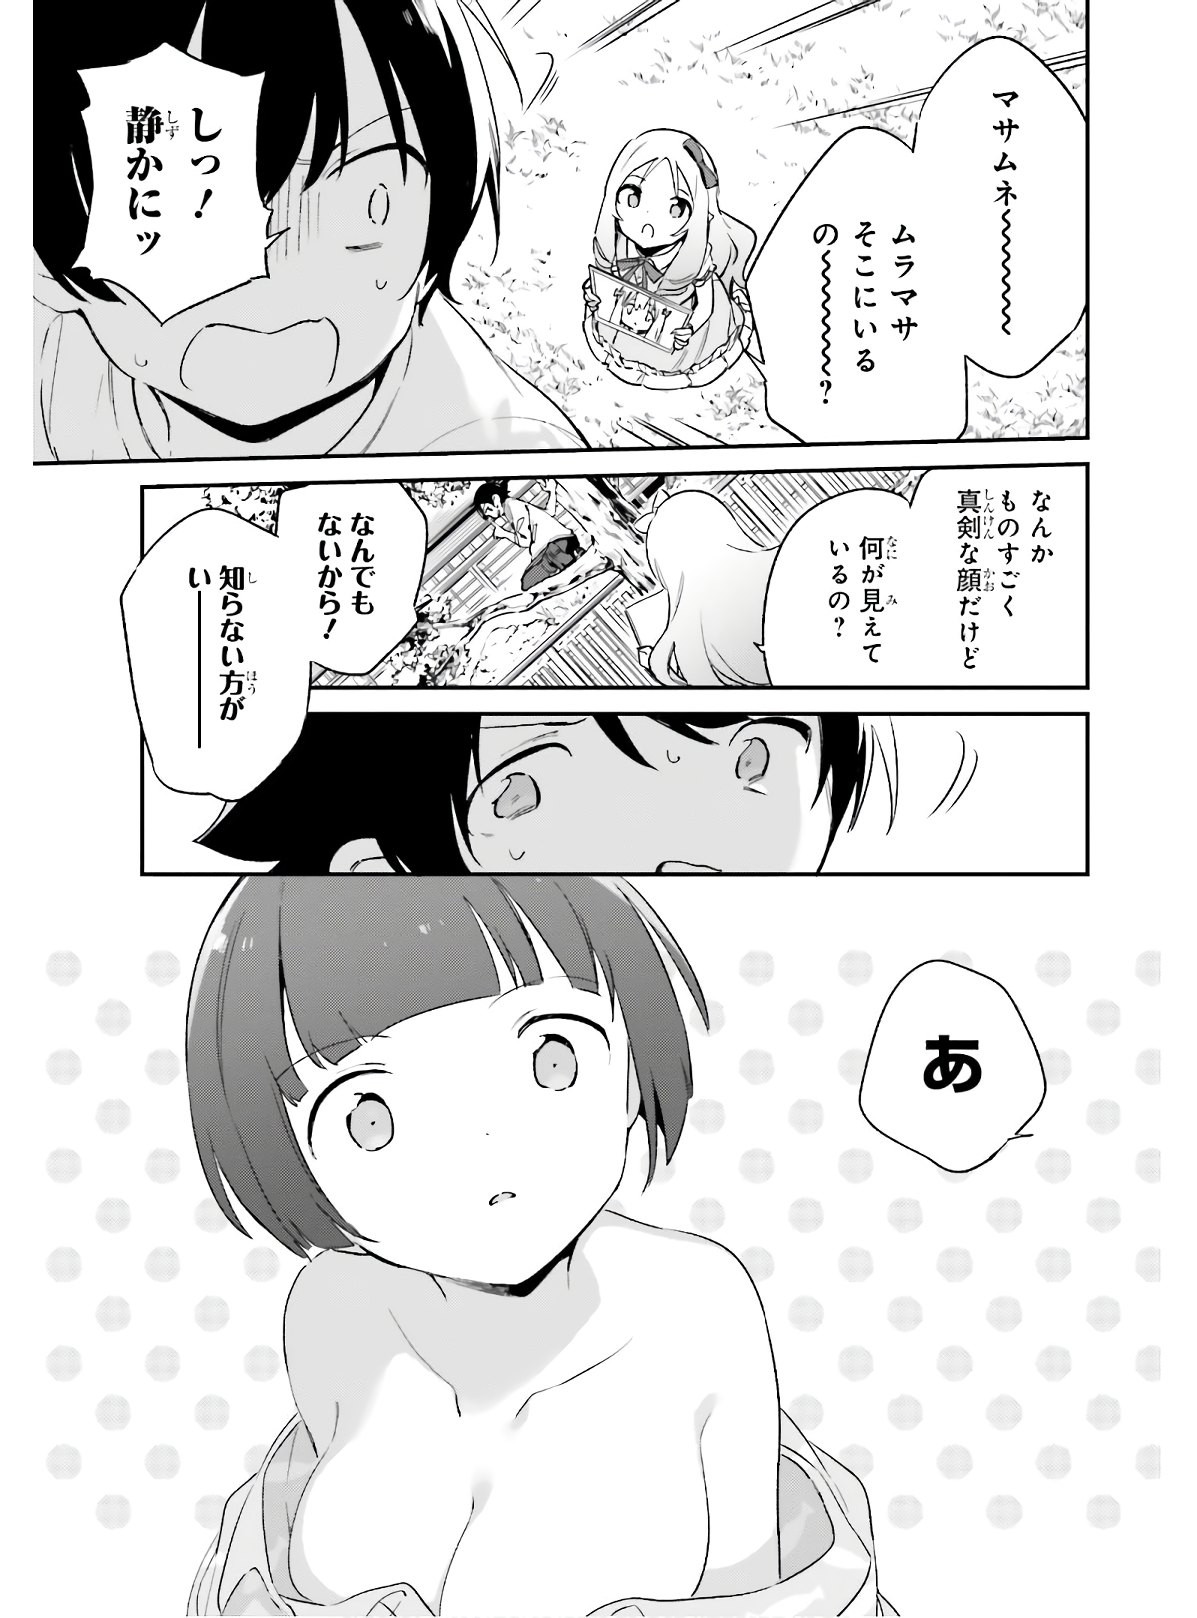 Ero Manga Sensei - Chapter 68 - Page 19